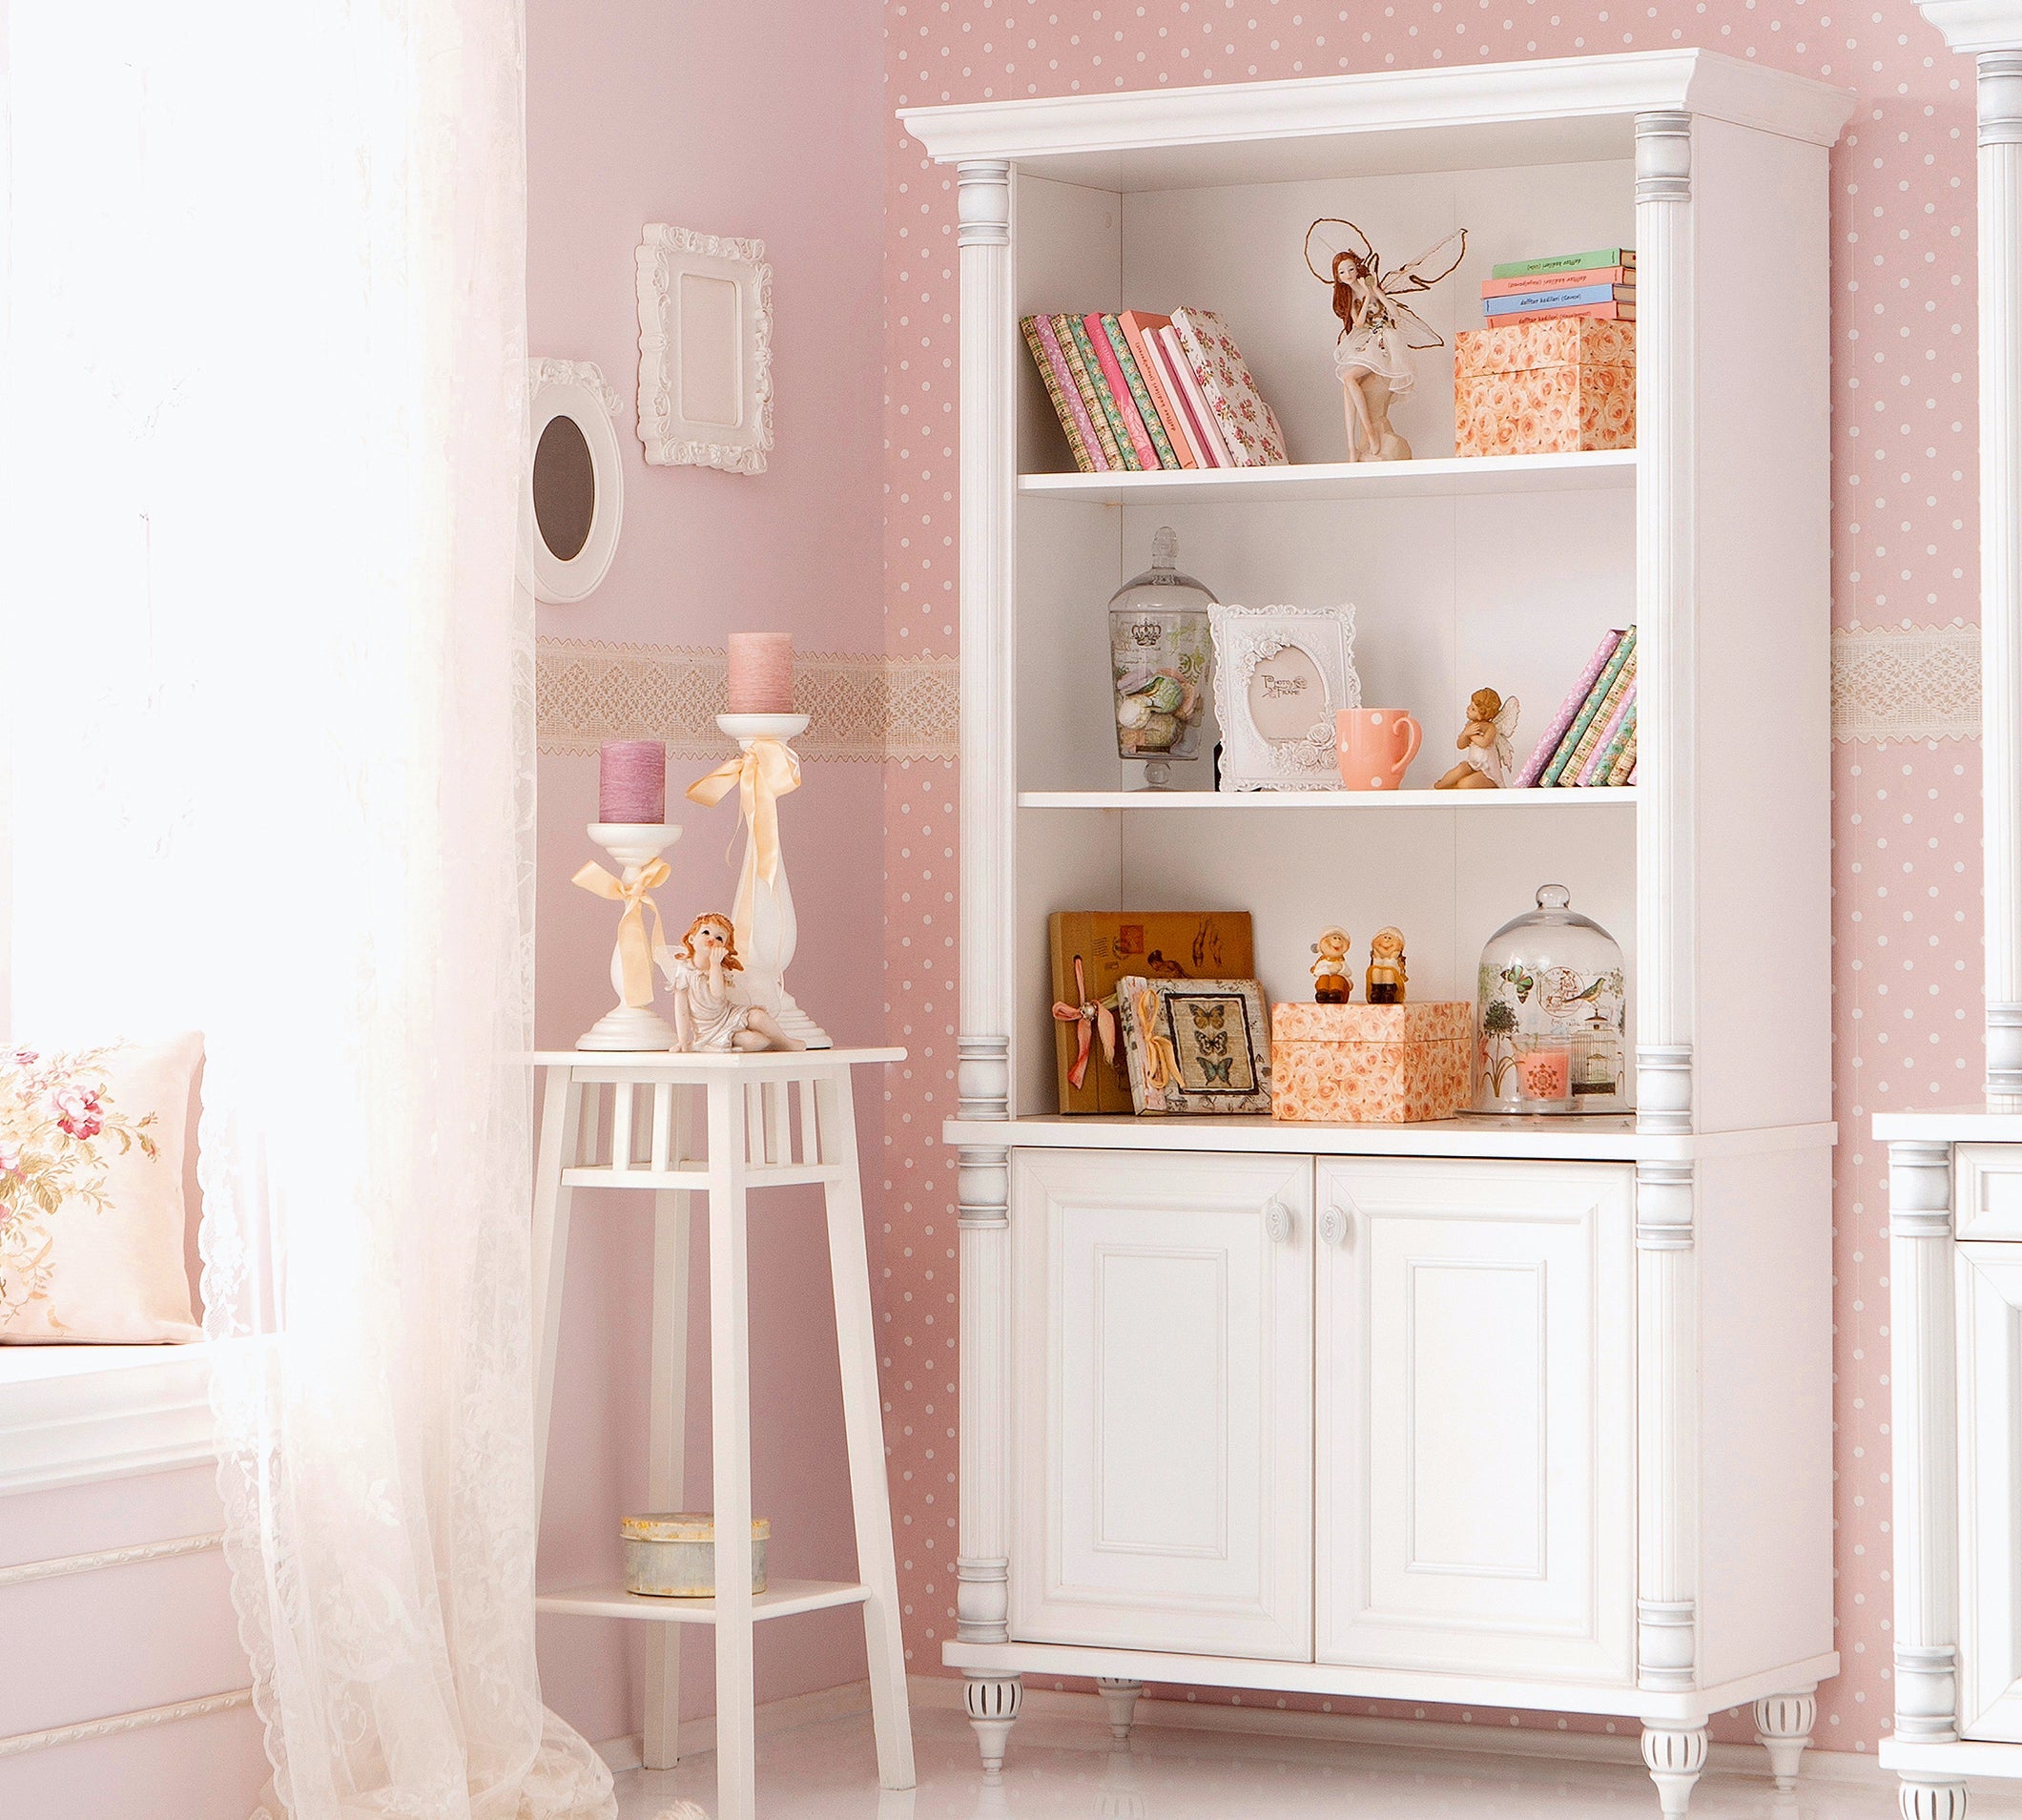 Cilek Romantic grote boekenkast wit, witte boekenkast kopen meisjeskamer, complete meisjeskamer, inspiratie prinsessenkamer meubels